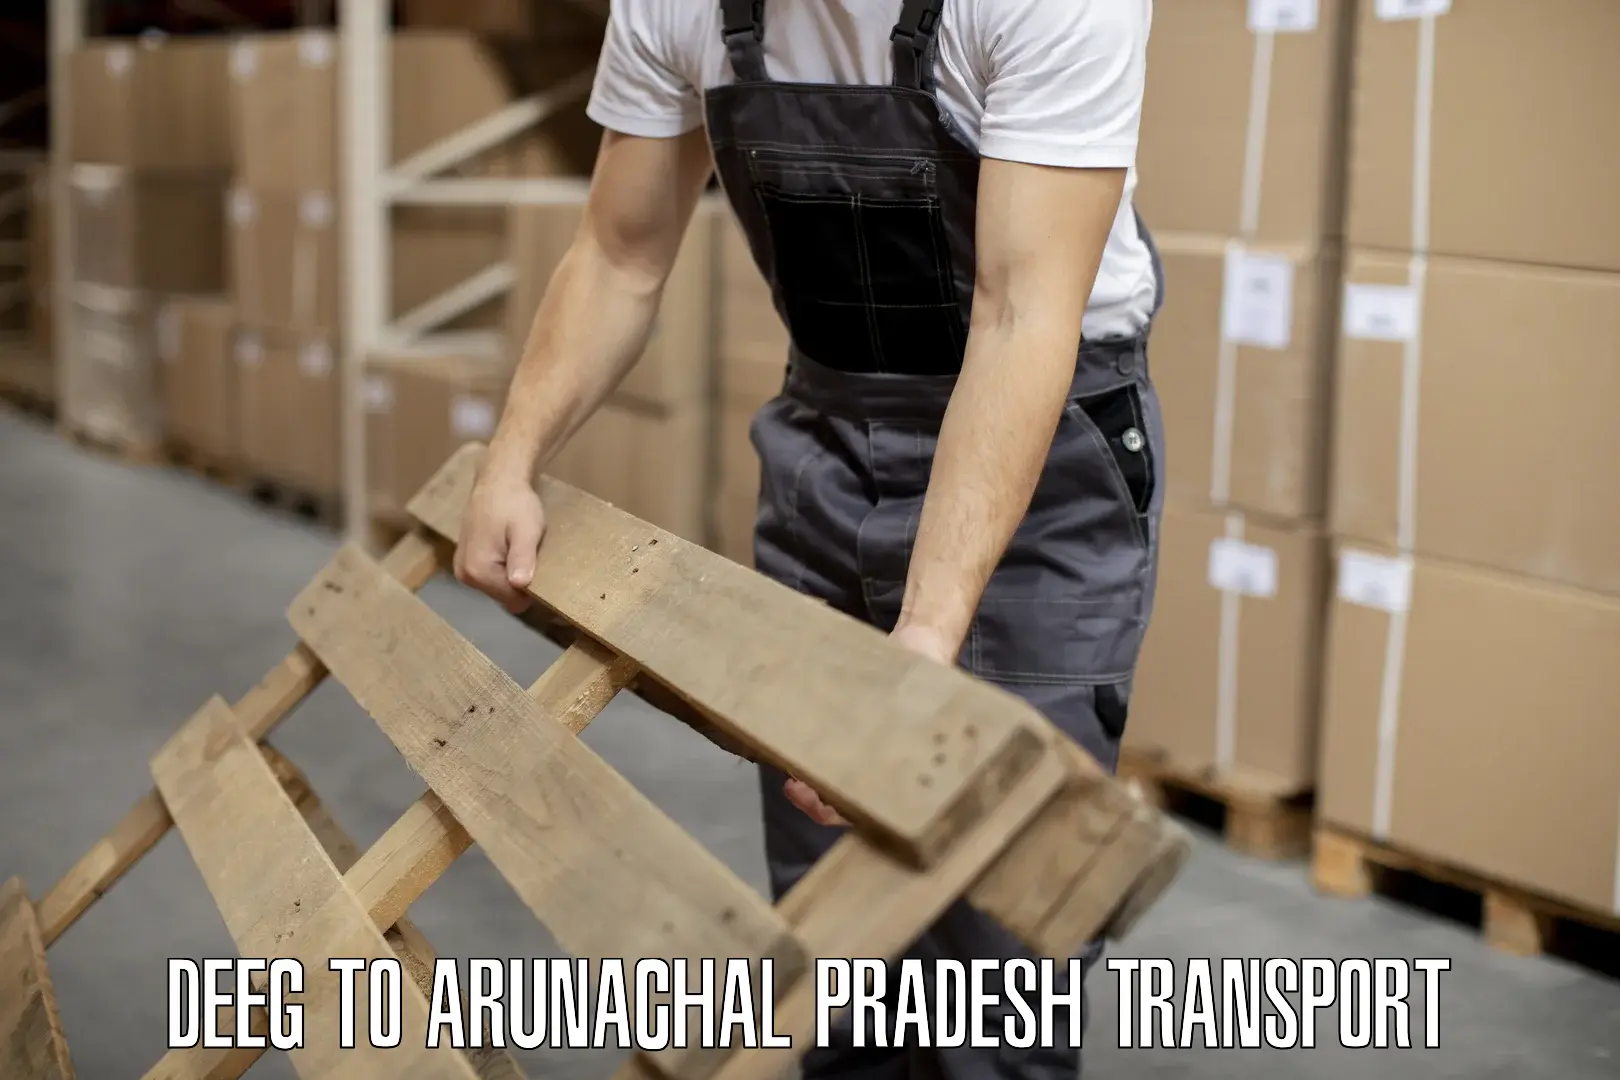 Transport in sharing Deeg to Arunachal Pradesh